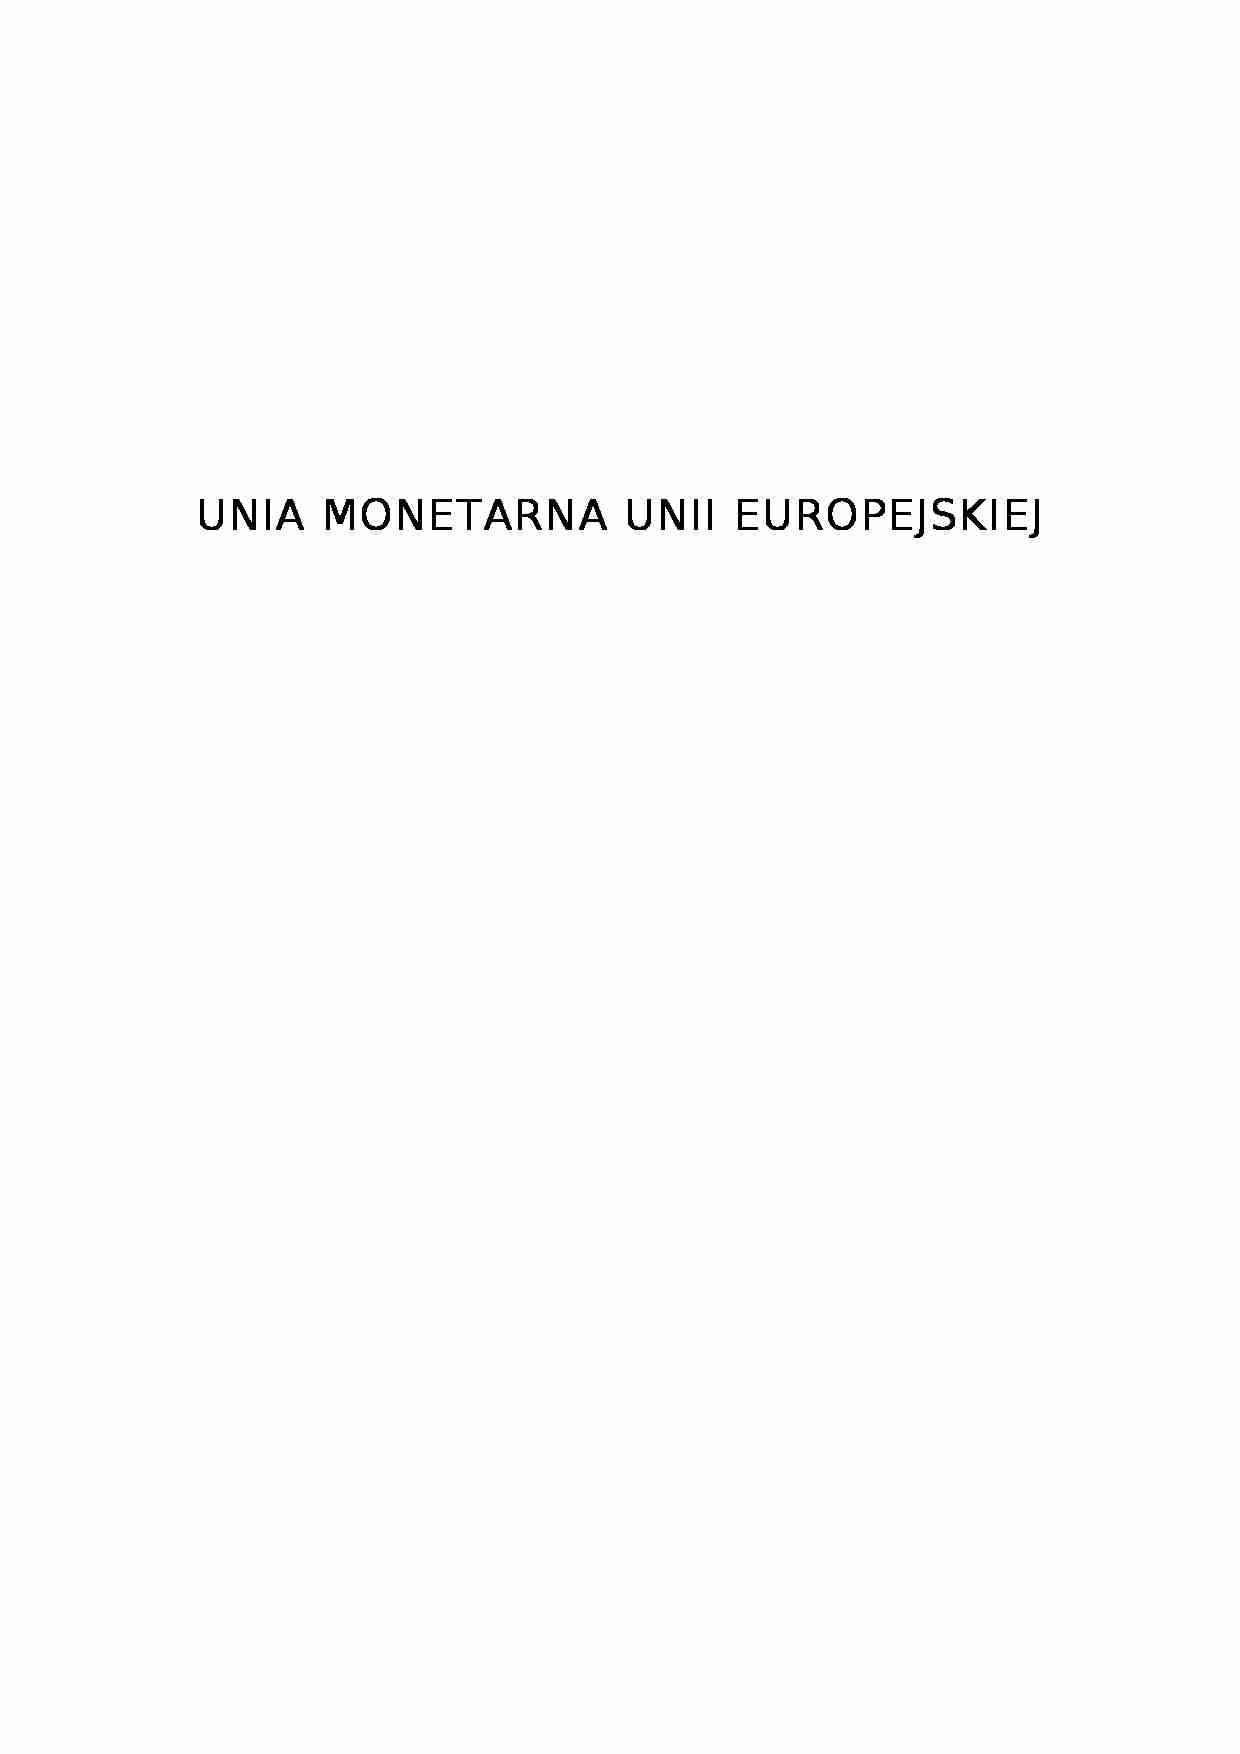 Unia monetarna Unii Europejskiej - strona 1